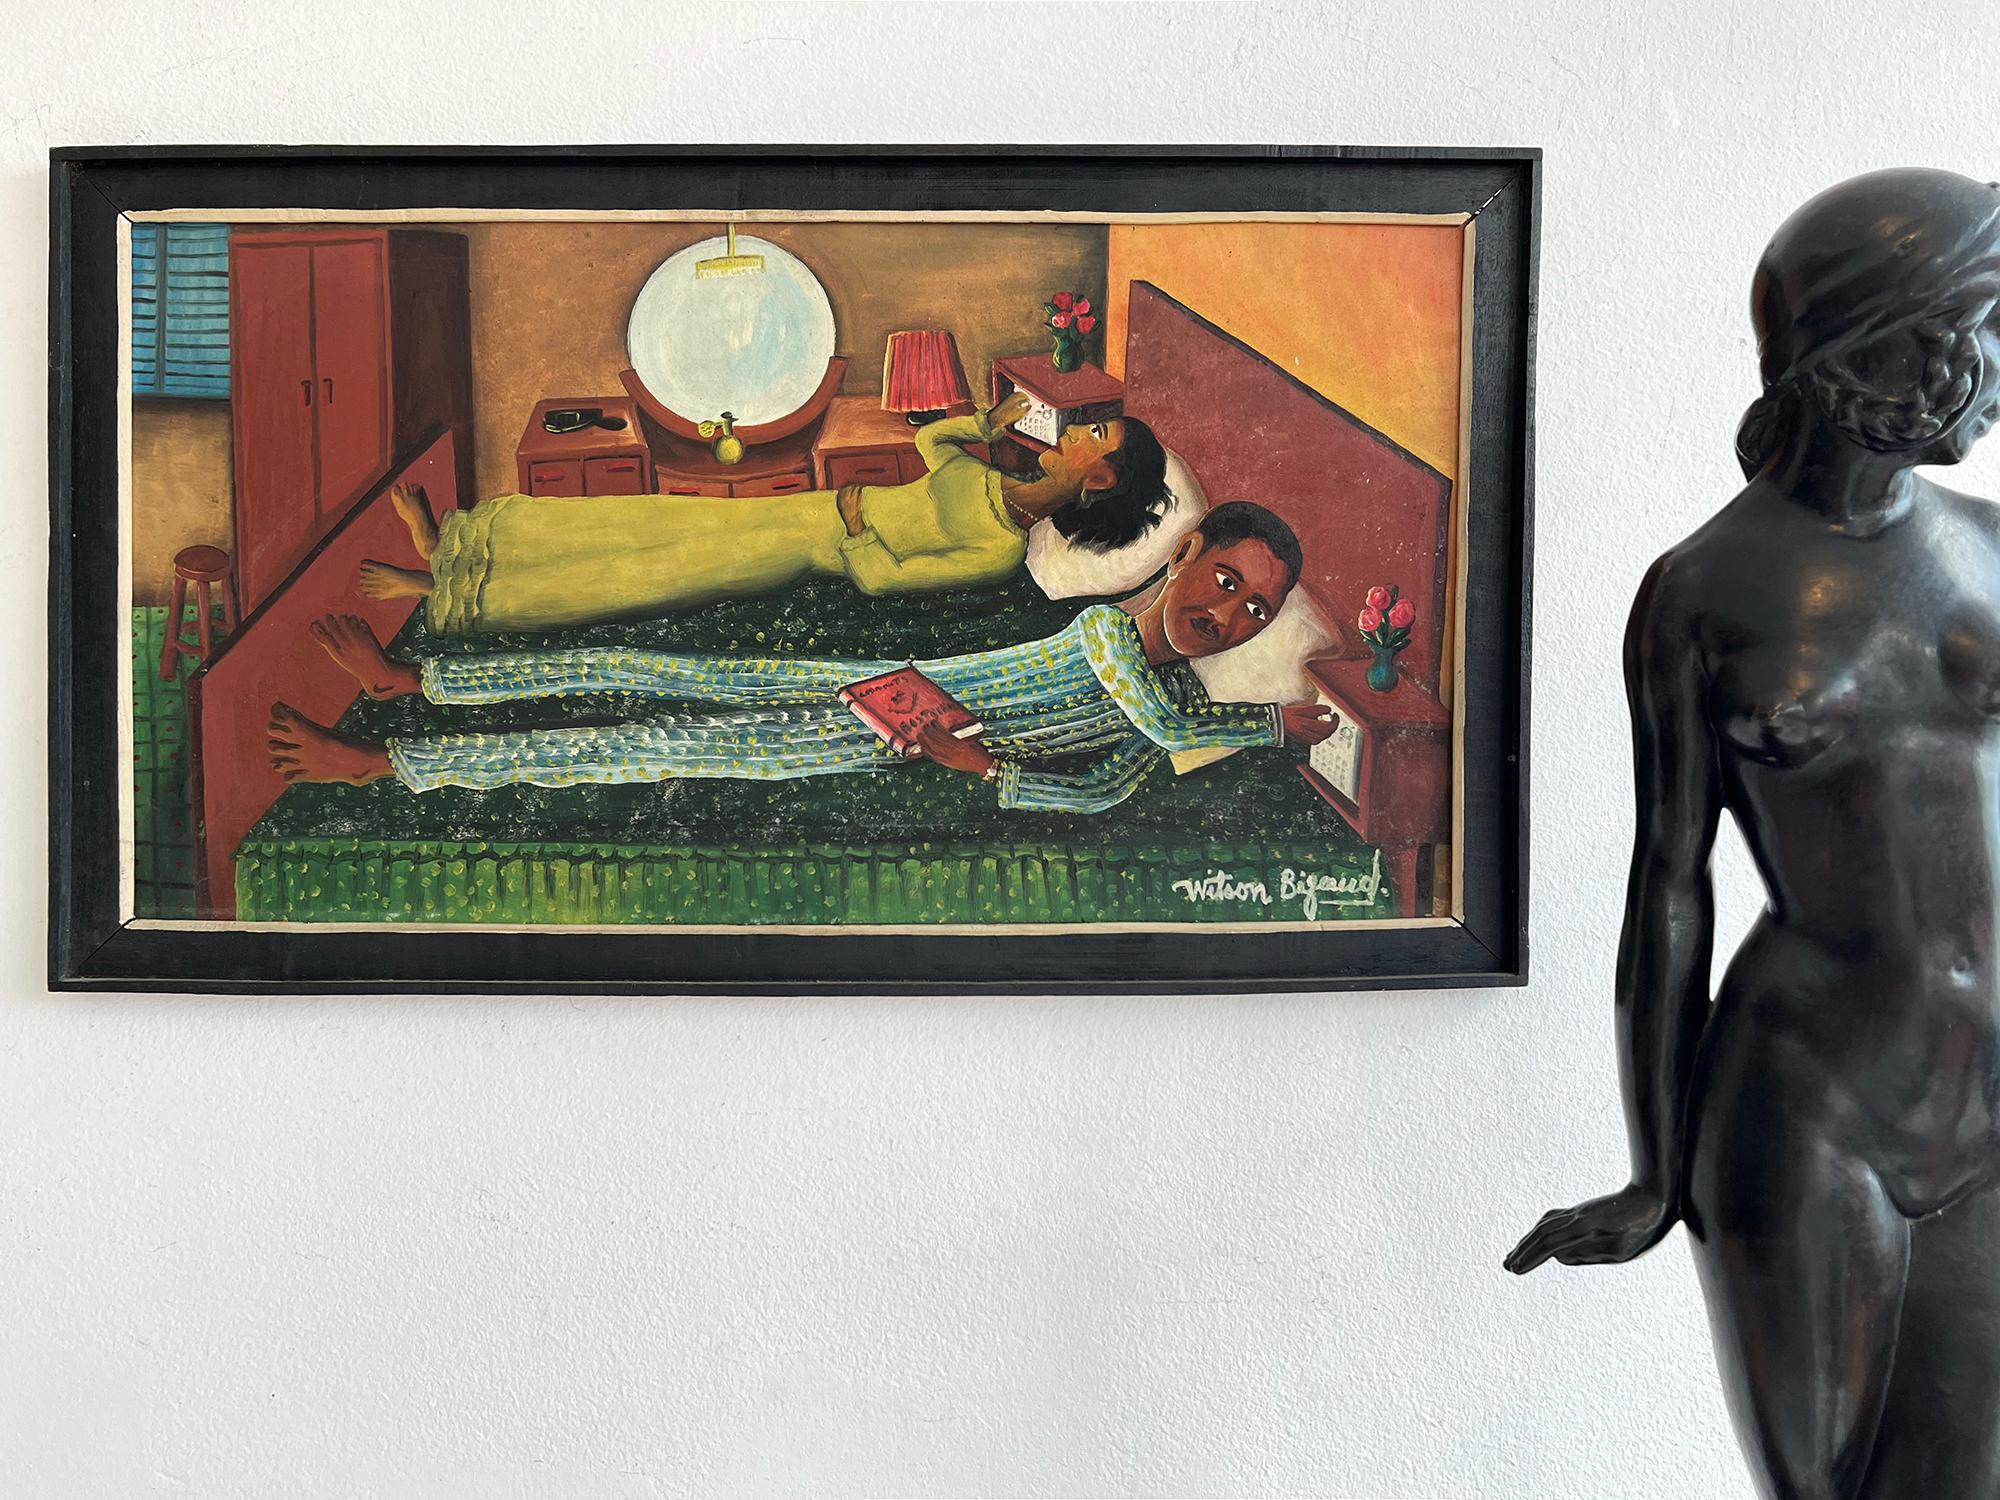 Wilson Bigaud ist ein Ideenkünstler, der in vielen seiner Gemälde visuelle Ideen präsentiert.    In dieser Arbeit,  Ein haitianisches Ehepaar stellt seine Radios synchron ein, während es im Bett liegt. Bigaud interessierte sich sehr für Radios, die